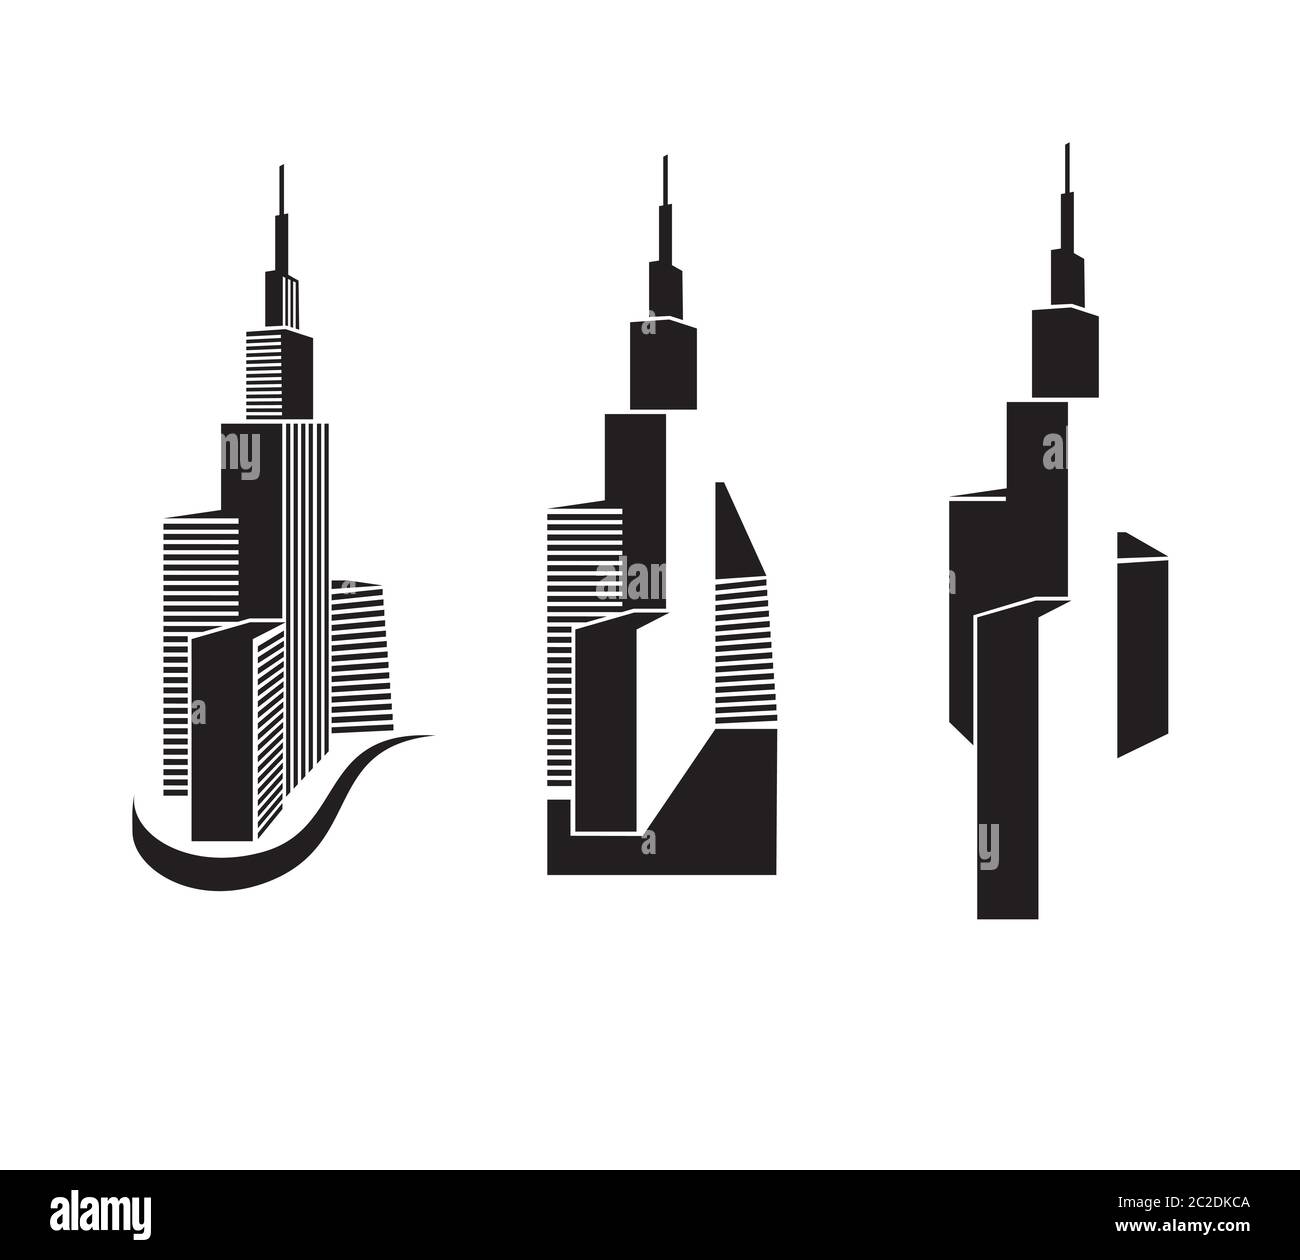 un insieme di grattacieli minimalisti stilizzati per l'uso in qualsiasi scopo grafico di illustrazione di centri d'affari, immobili, grandi città, come simbolo, ecc Illustrazione Vettoriale